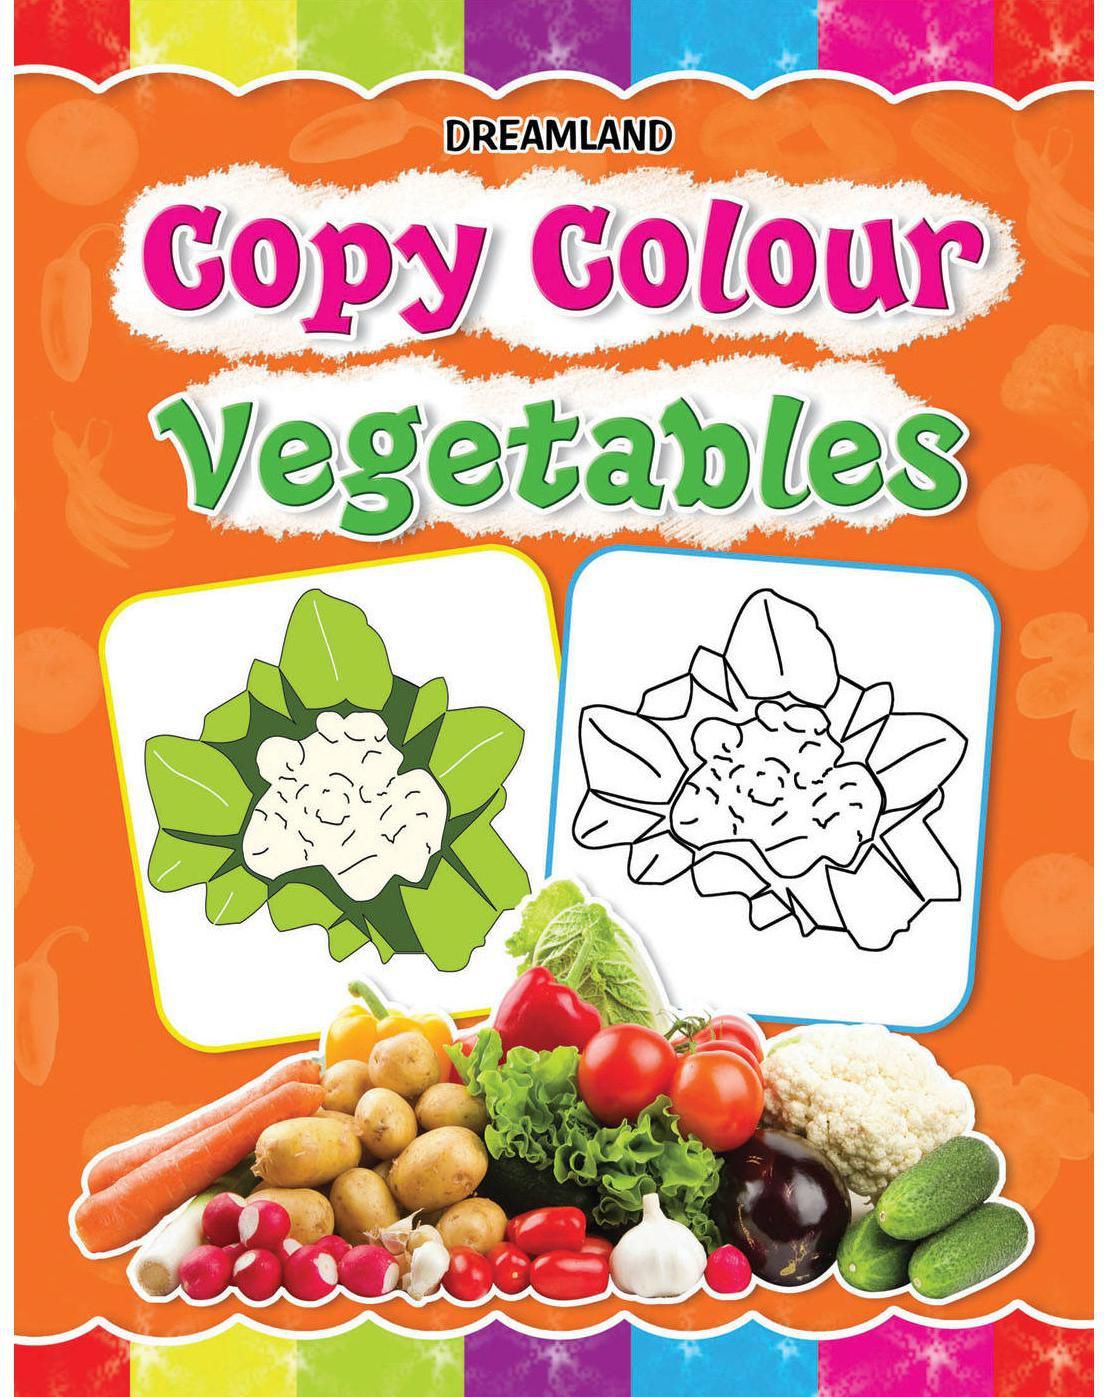 Copy Colour: Vegetables